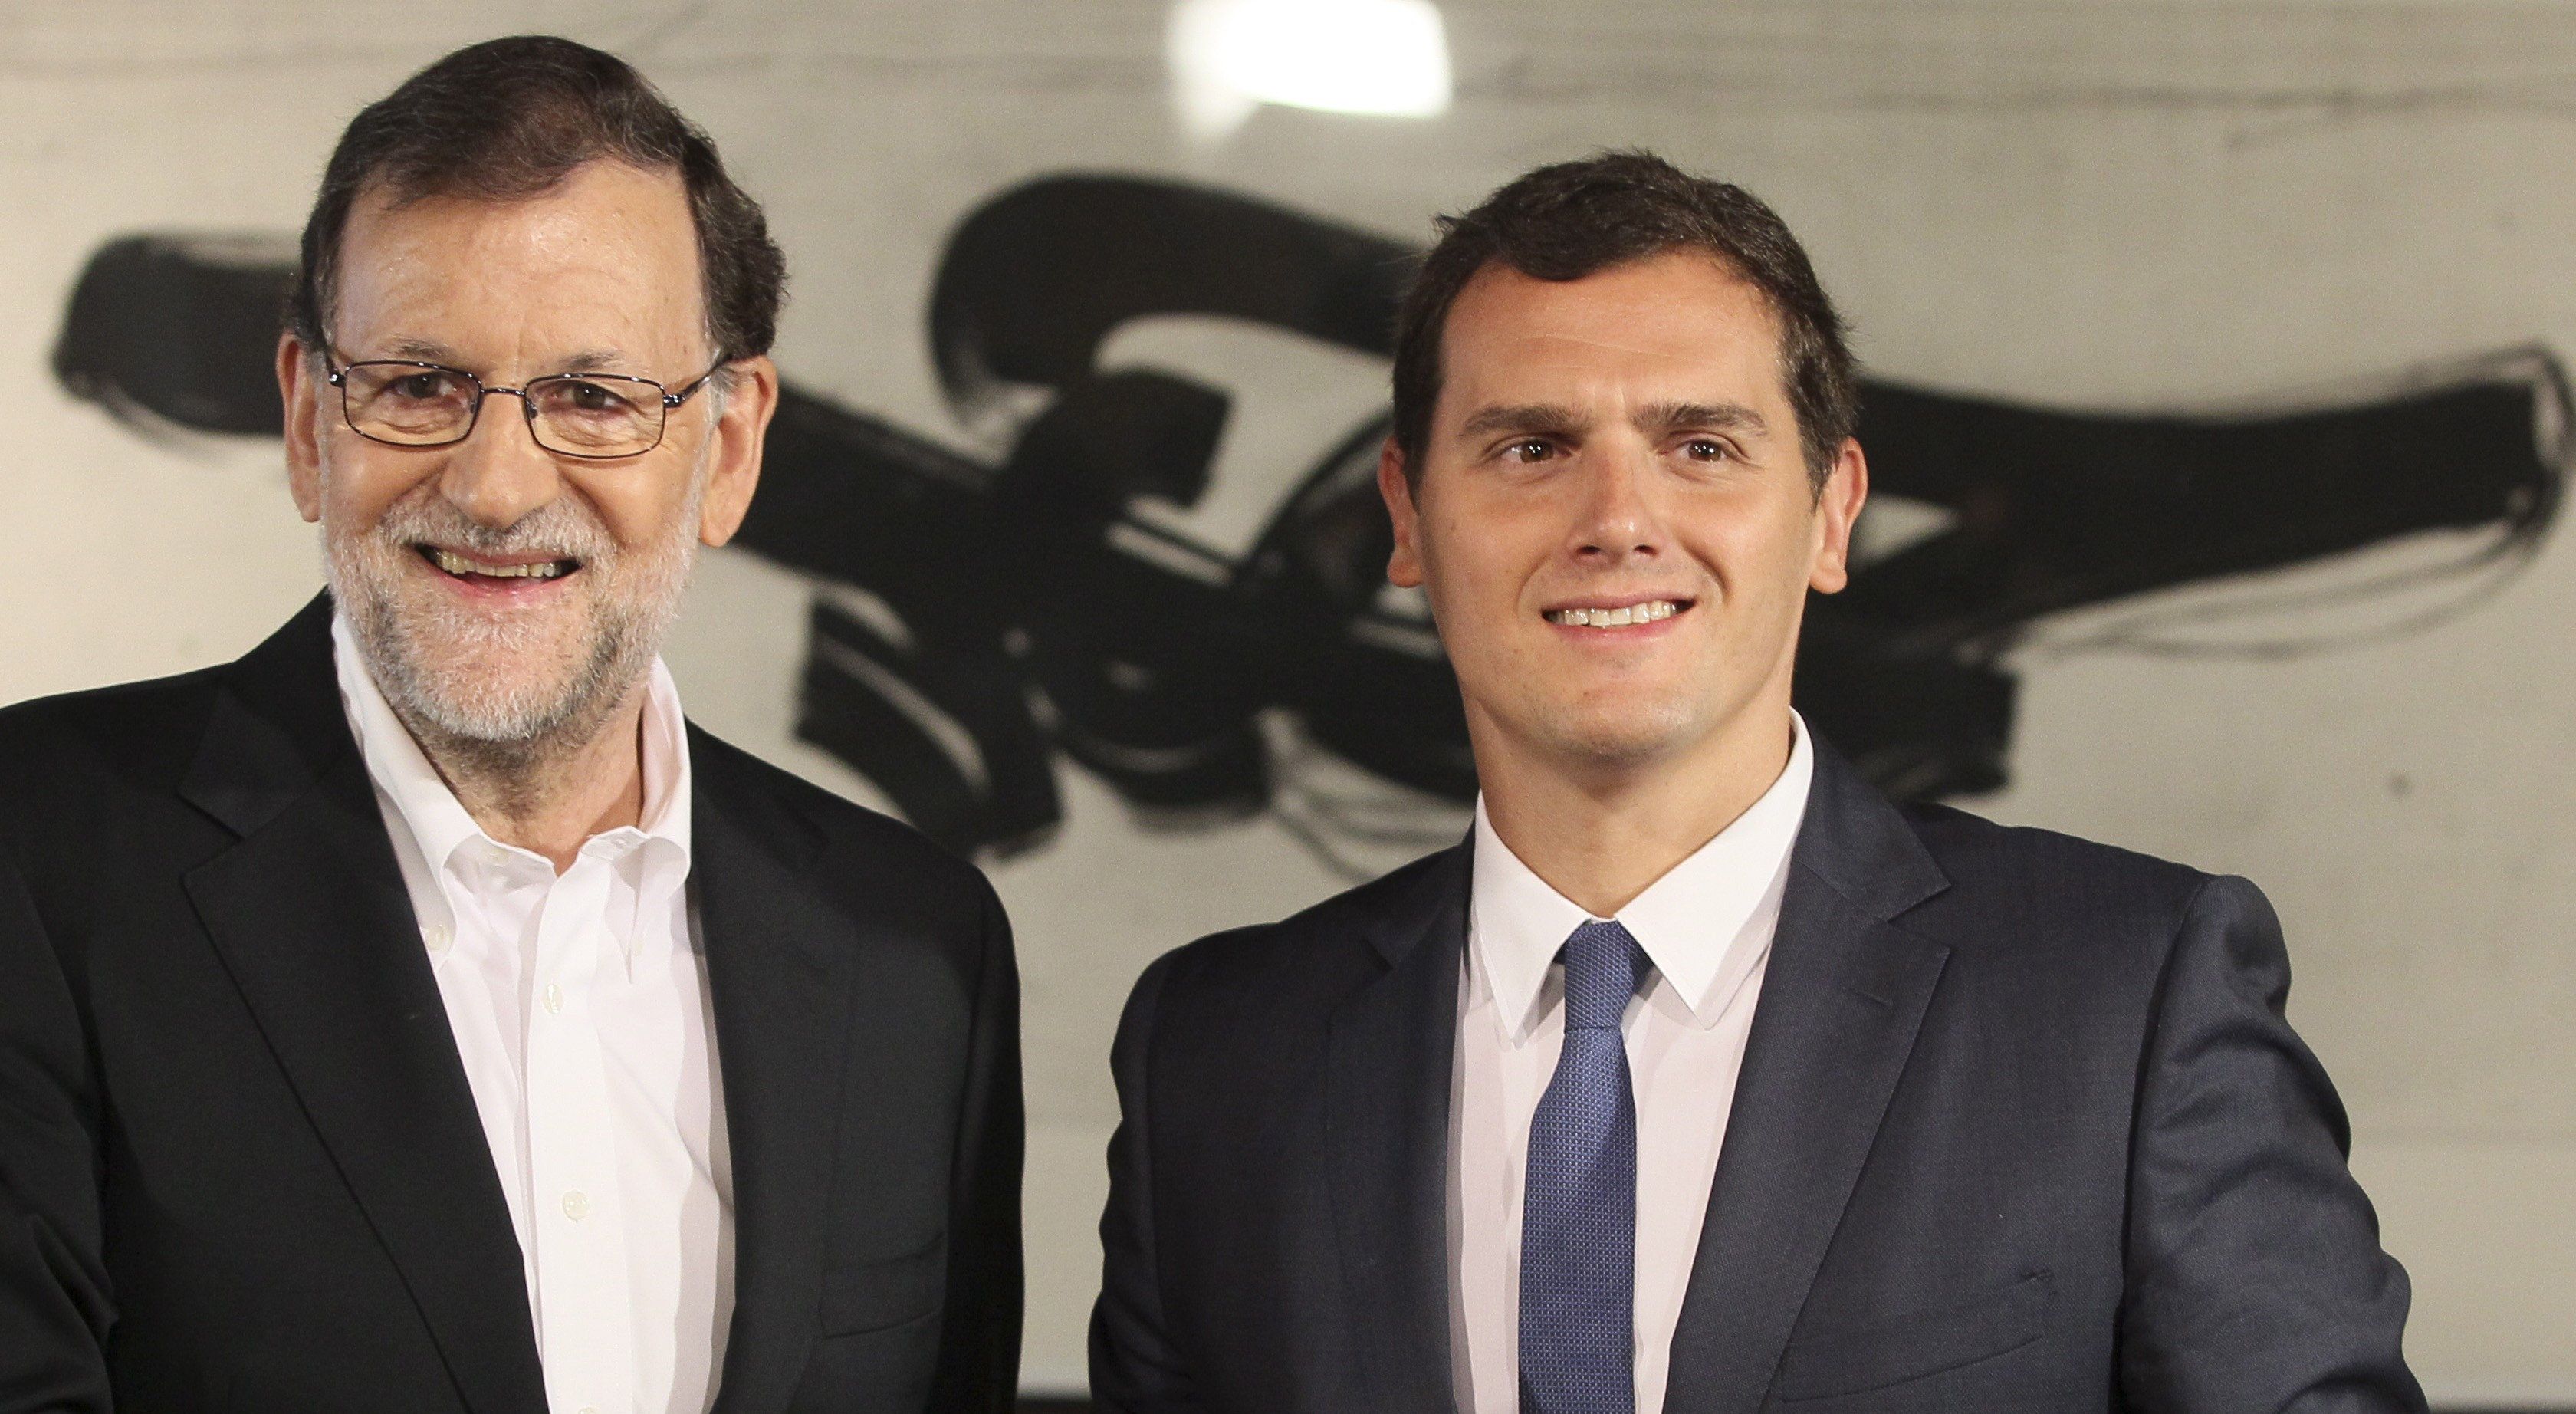 Bloomberg adverteix: "El cas català torna a amenaçar els pressupostos de Rajoy"